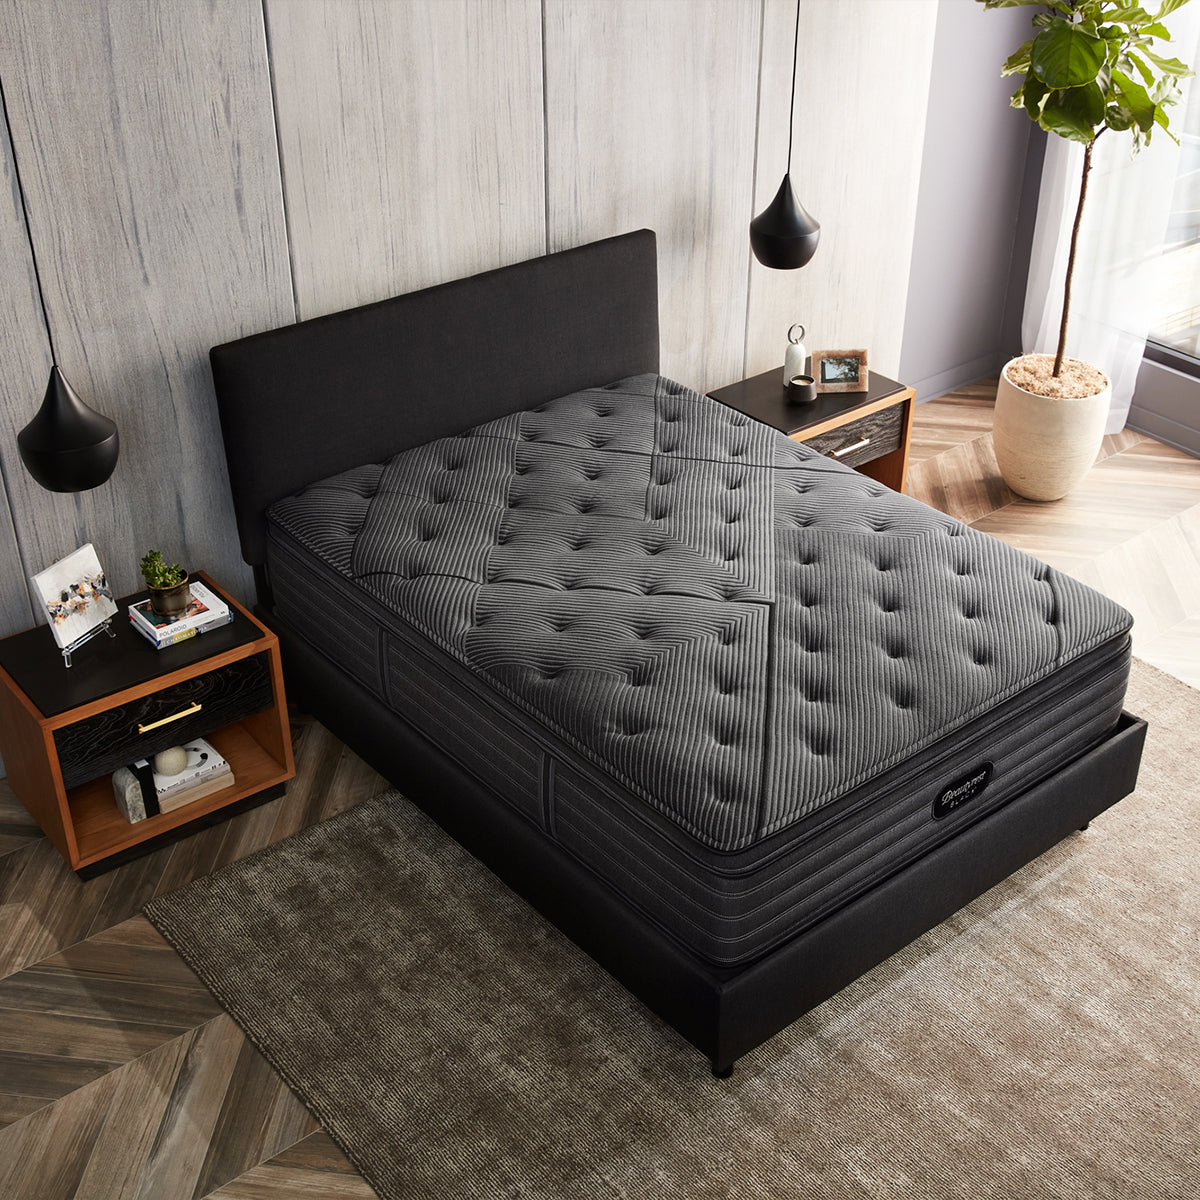 Beautyrest Black L-Class Plush Pillow Top Mattress On Bed Frame Overhead View